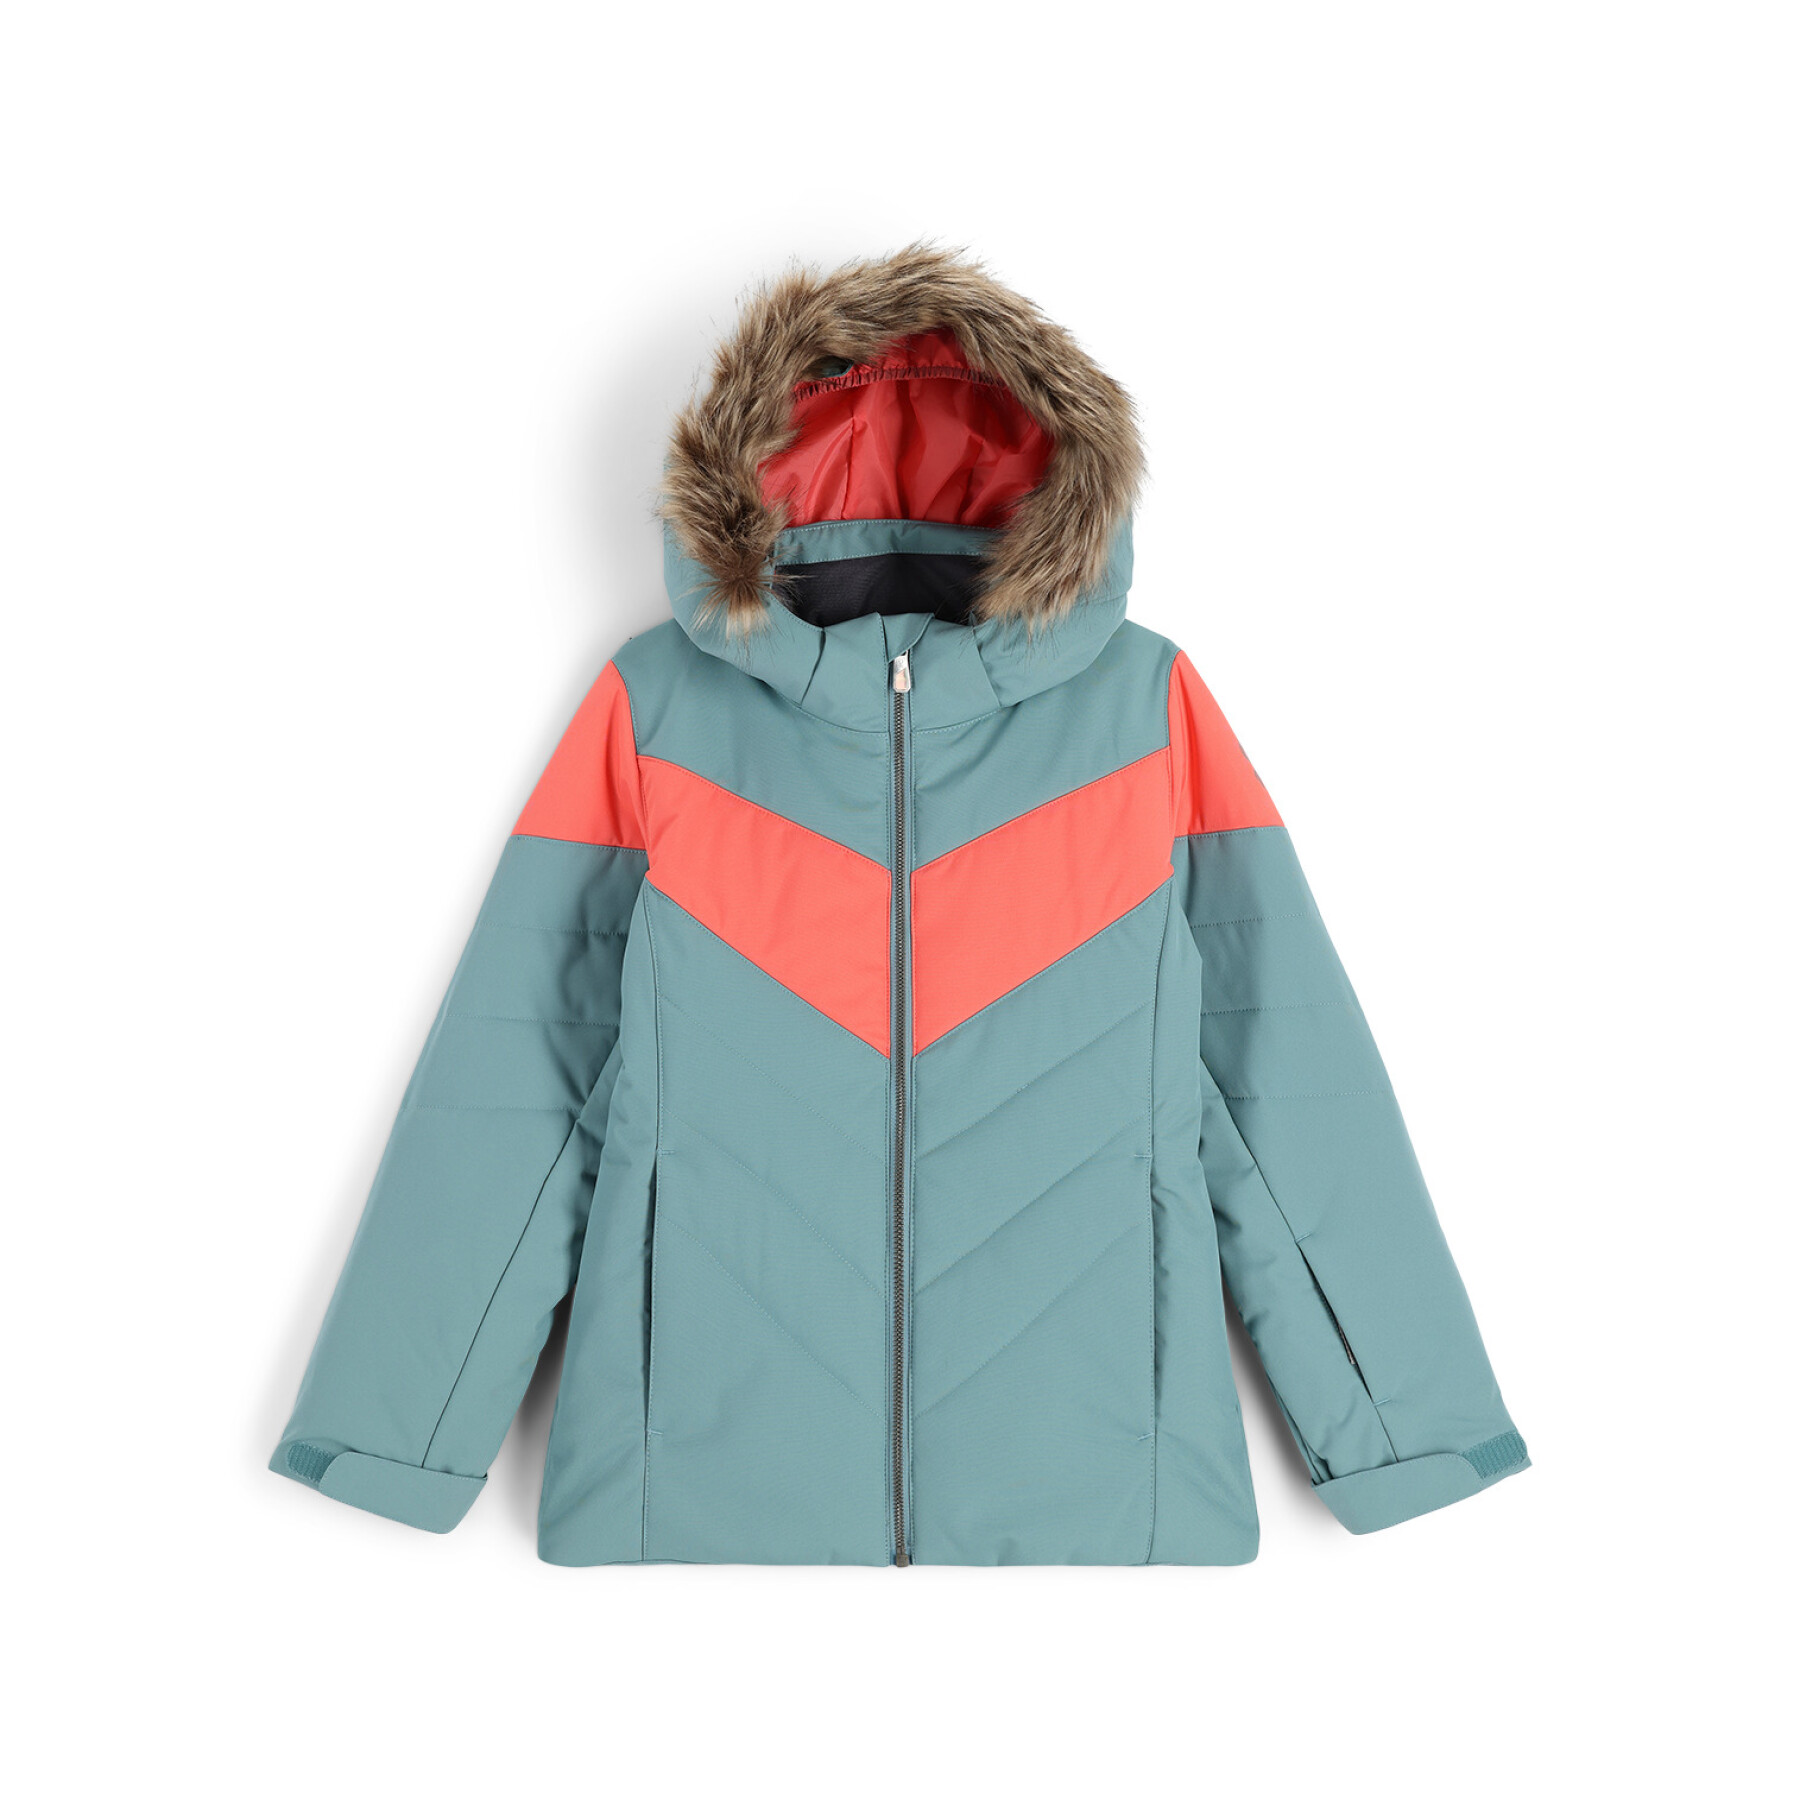 Ski jacket for girls Spyder Lola